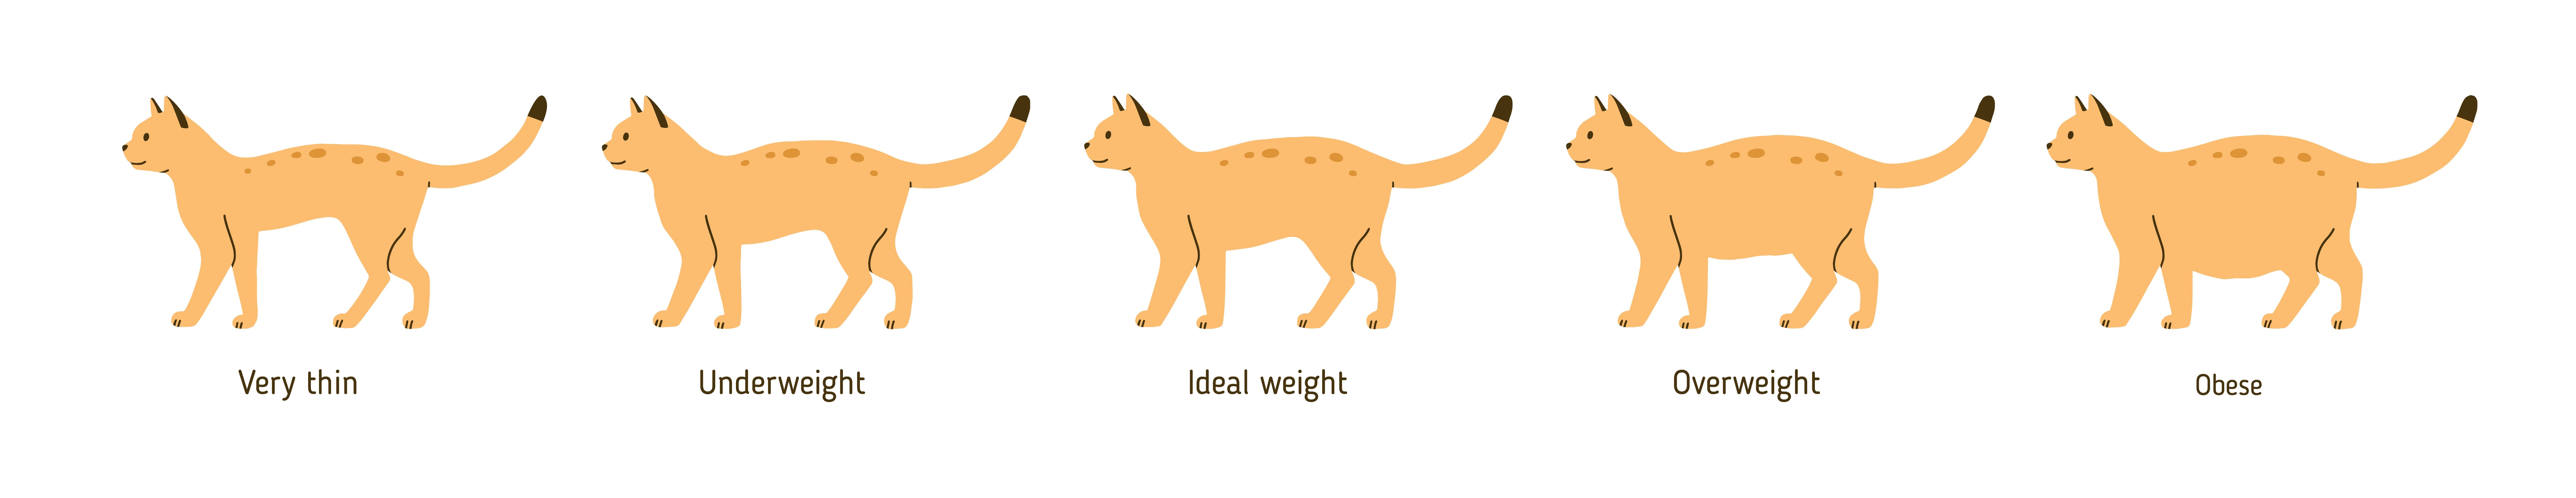 Overweight cat chart, Plains Vet 